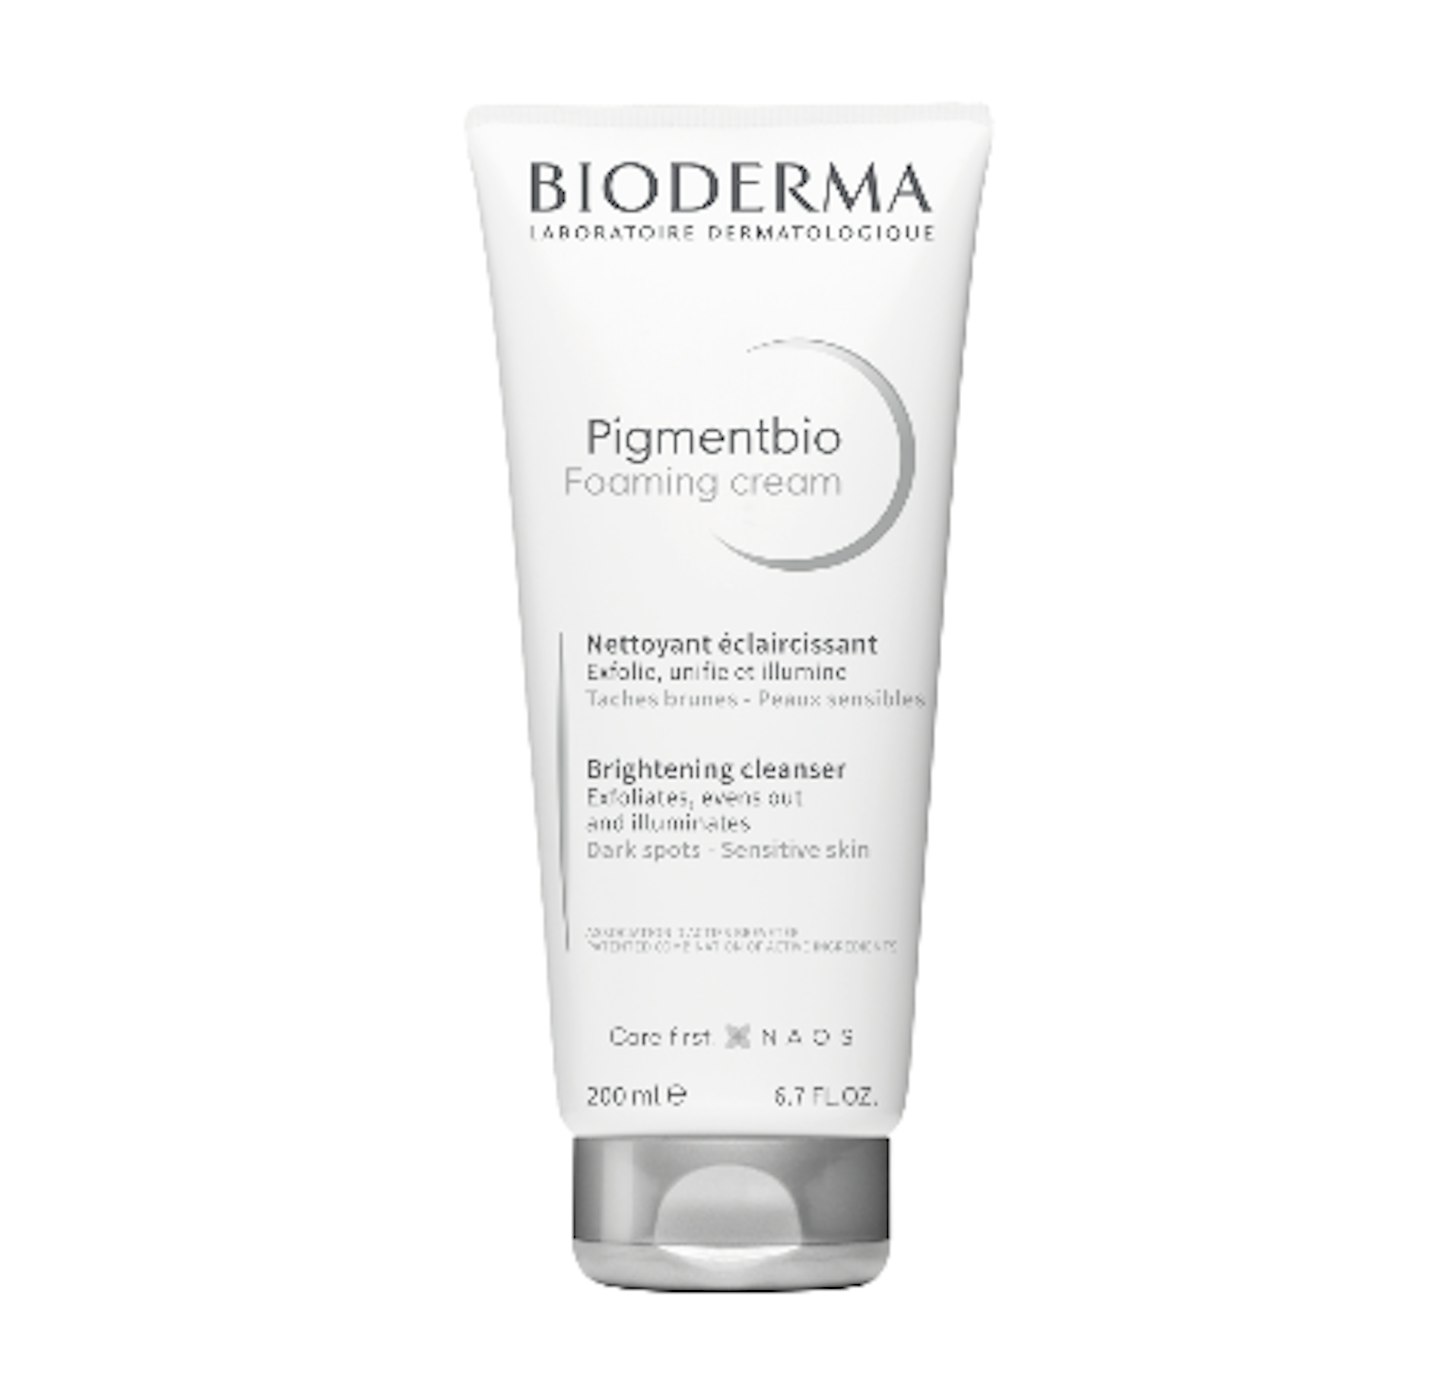 Bioderma Pigmentbio Foaming Cream, £15